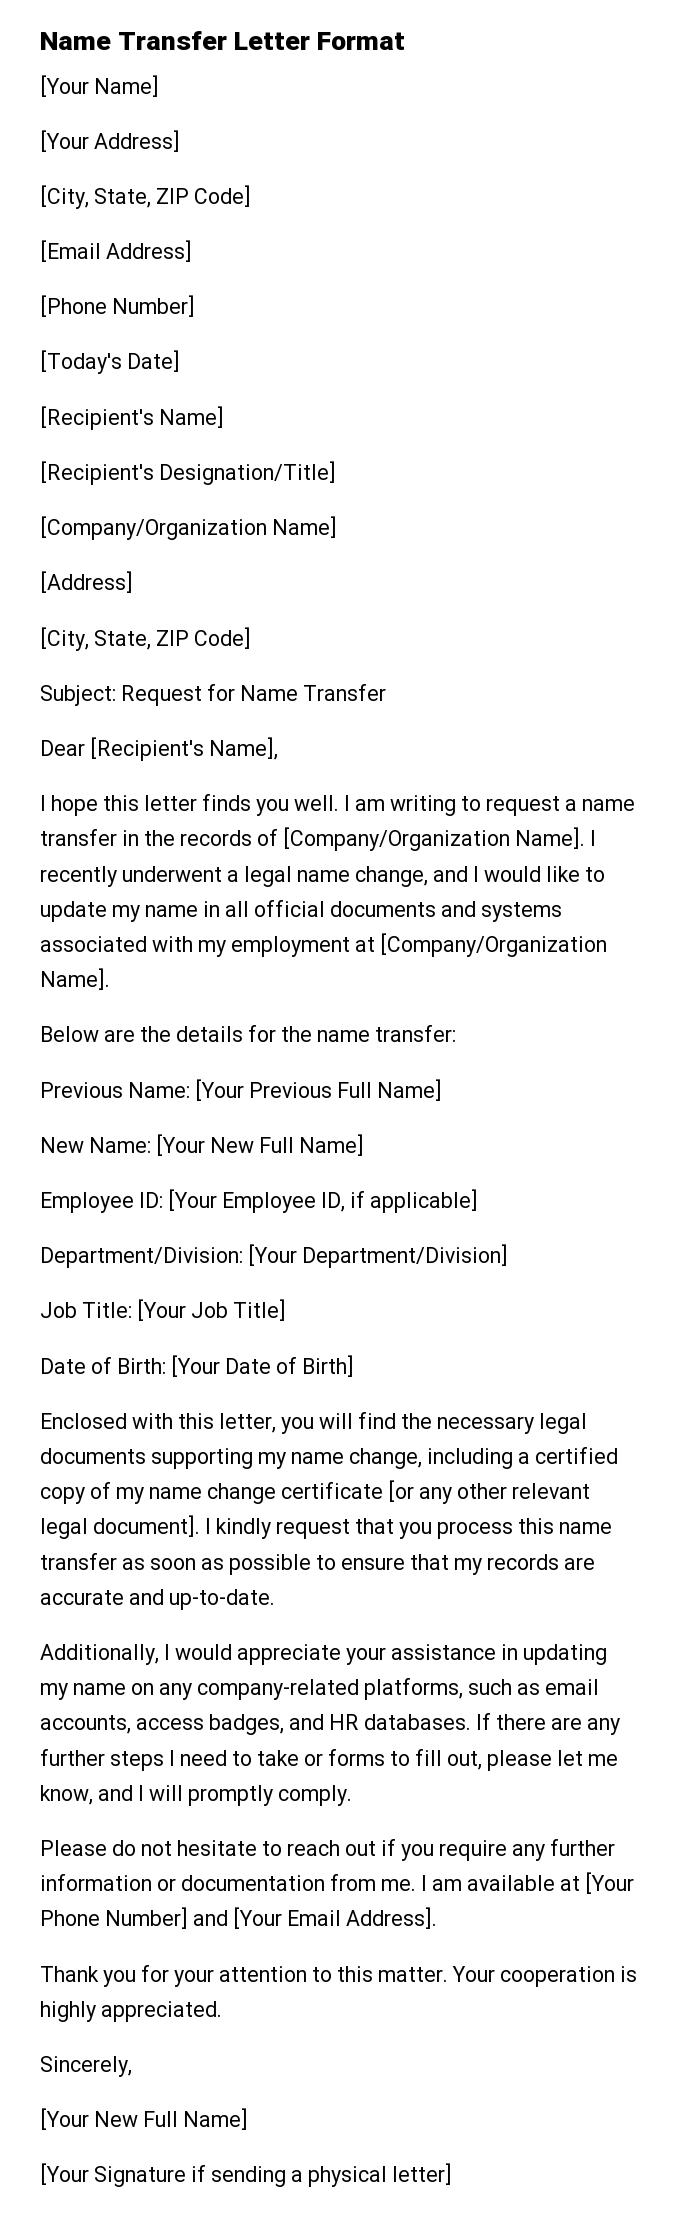 Name Transfer Letter Format